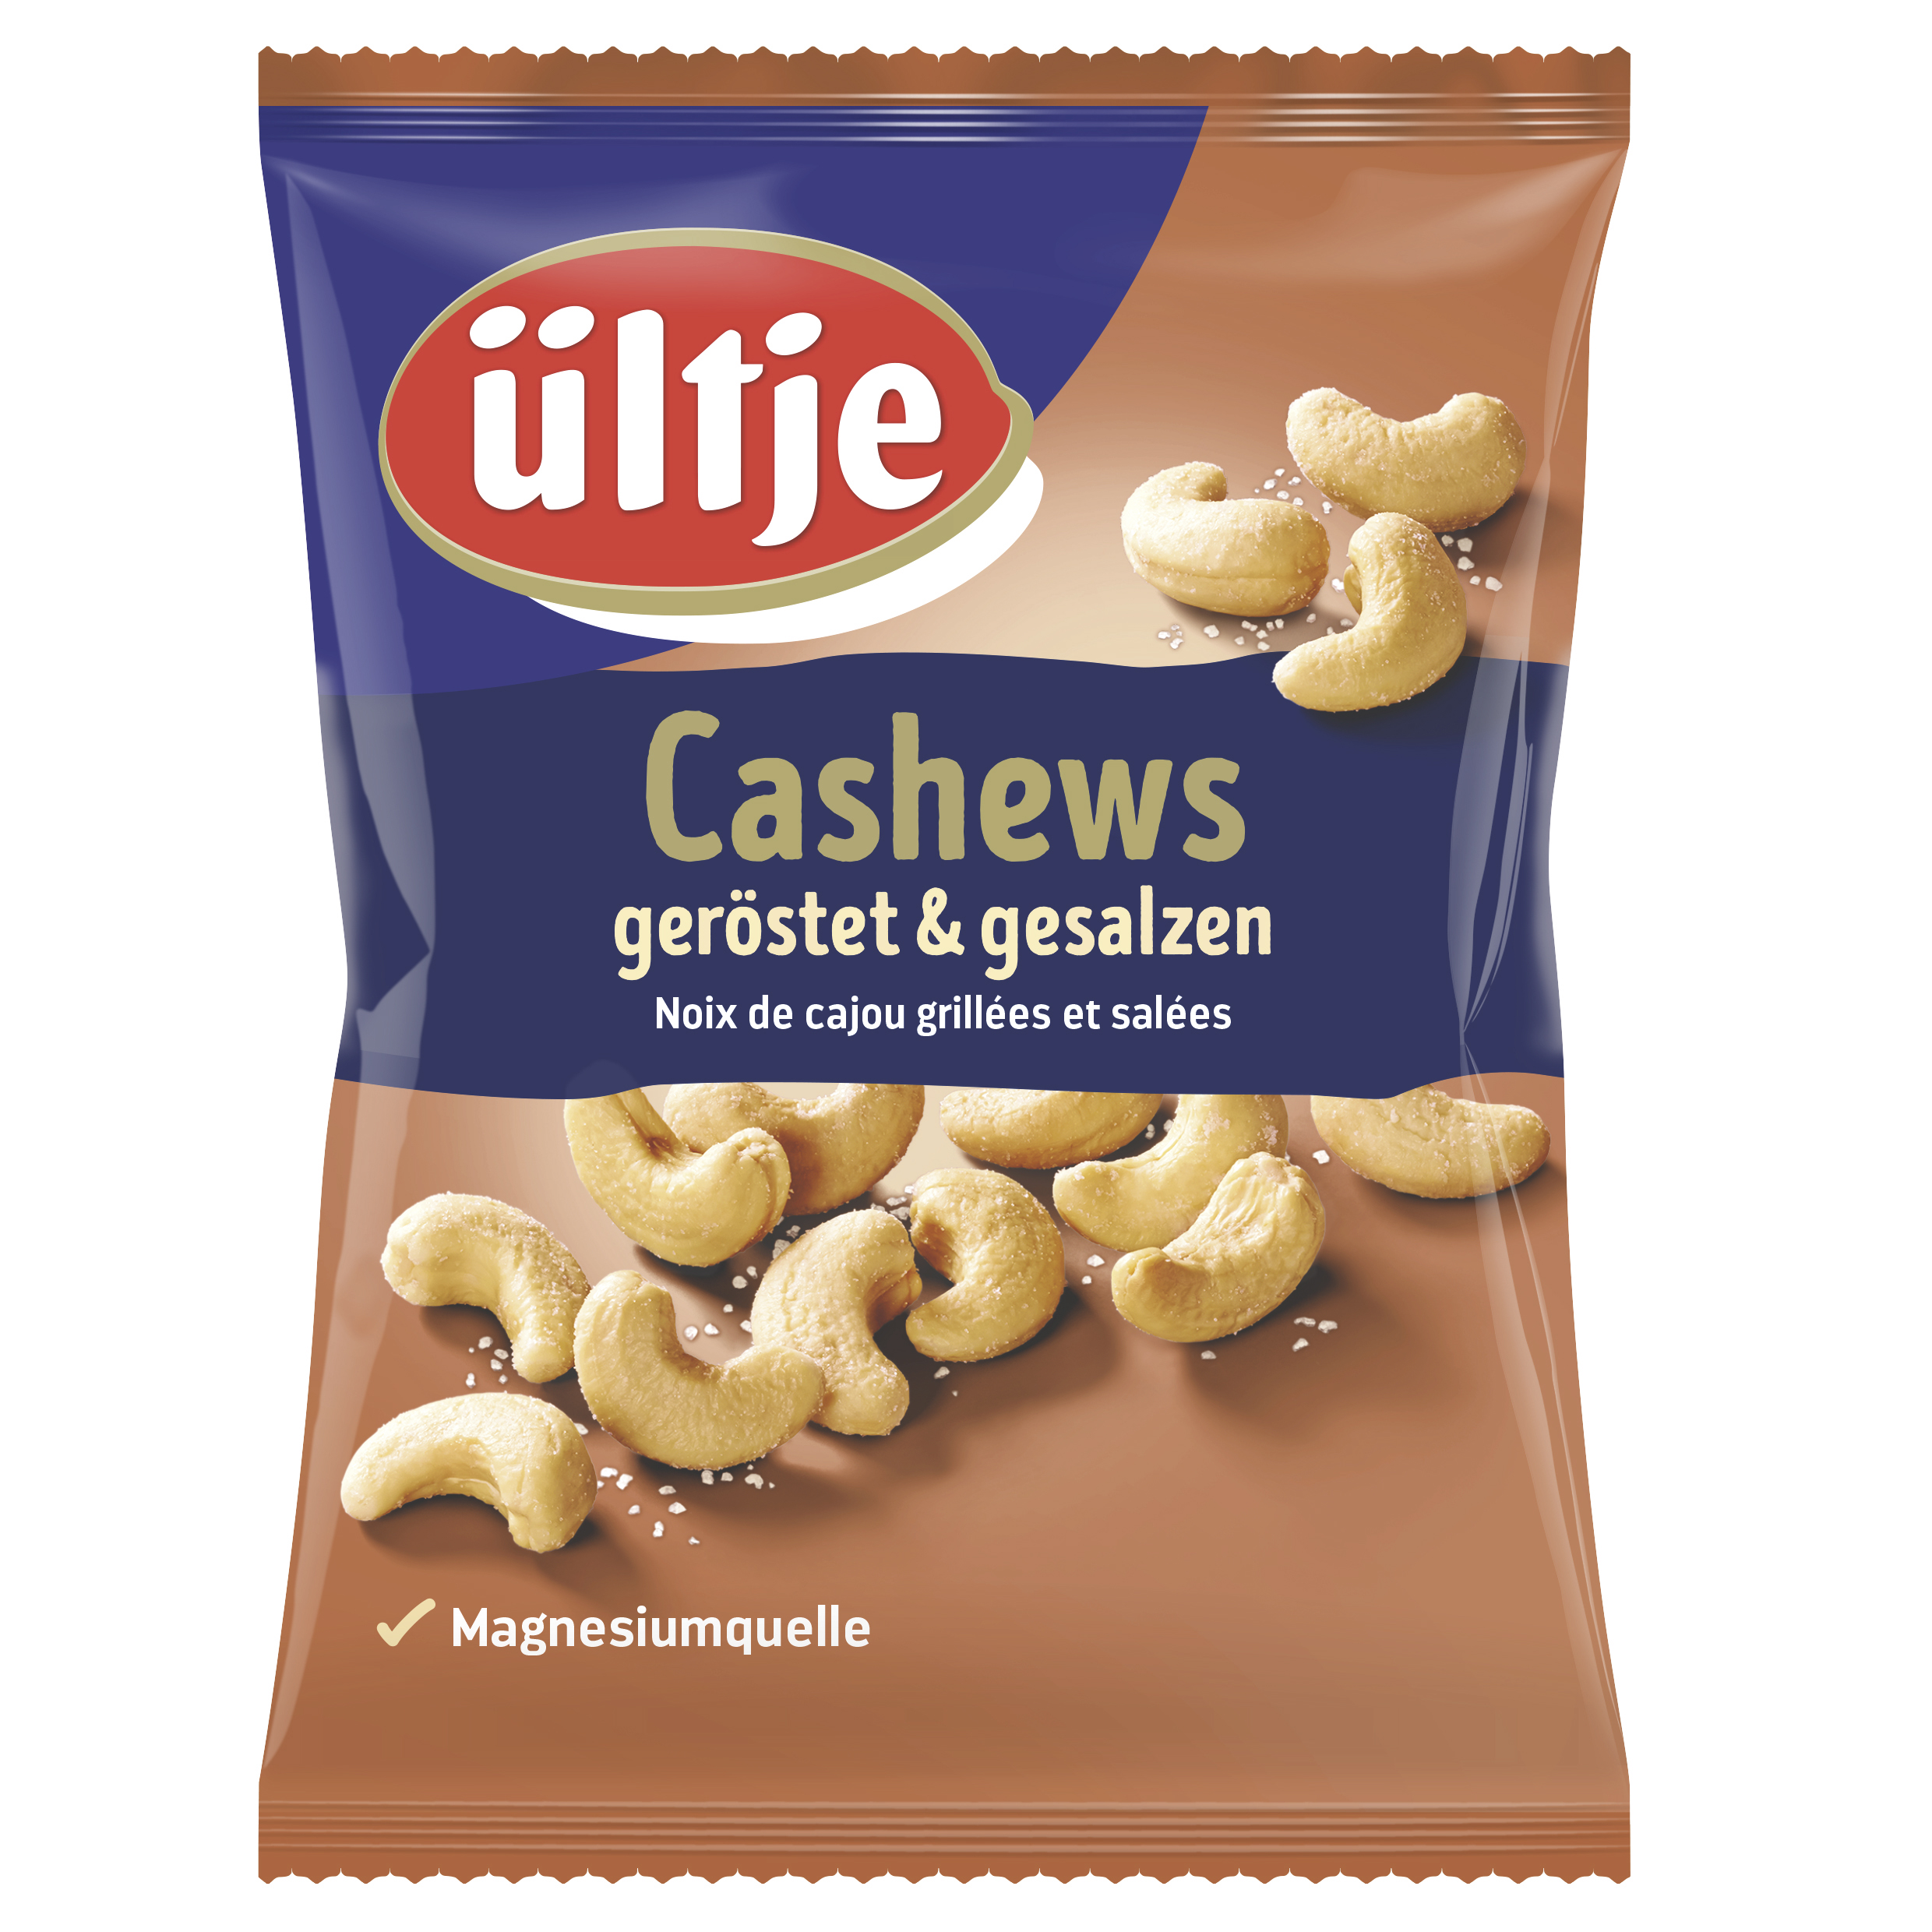 ültje Cashews, geröstet & gesalzen, 150g Beutel